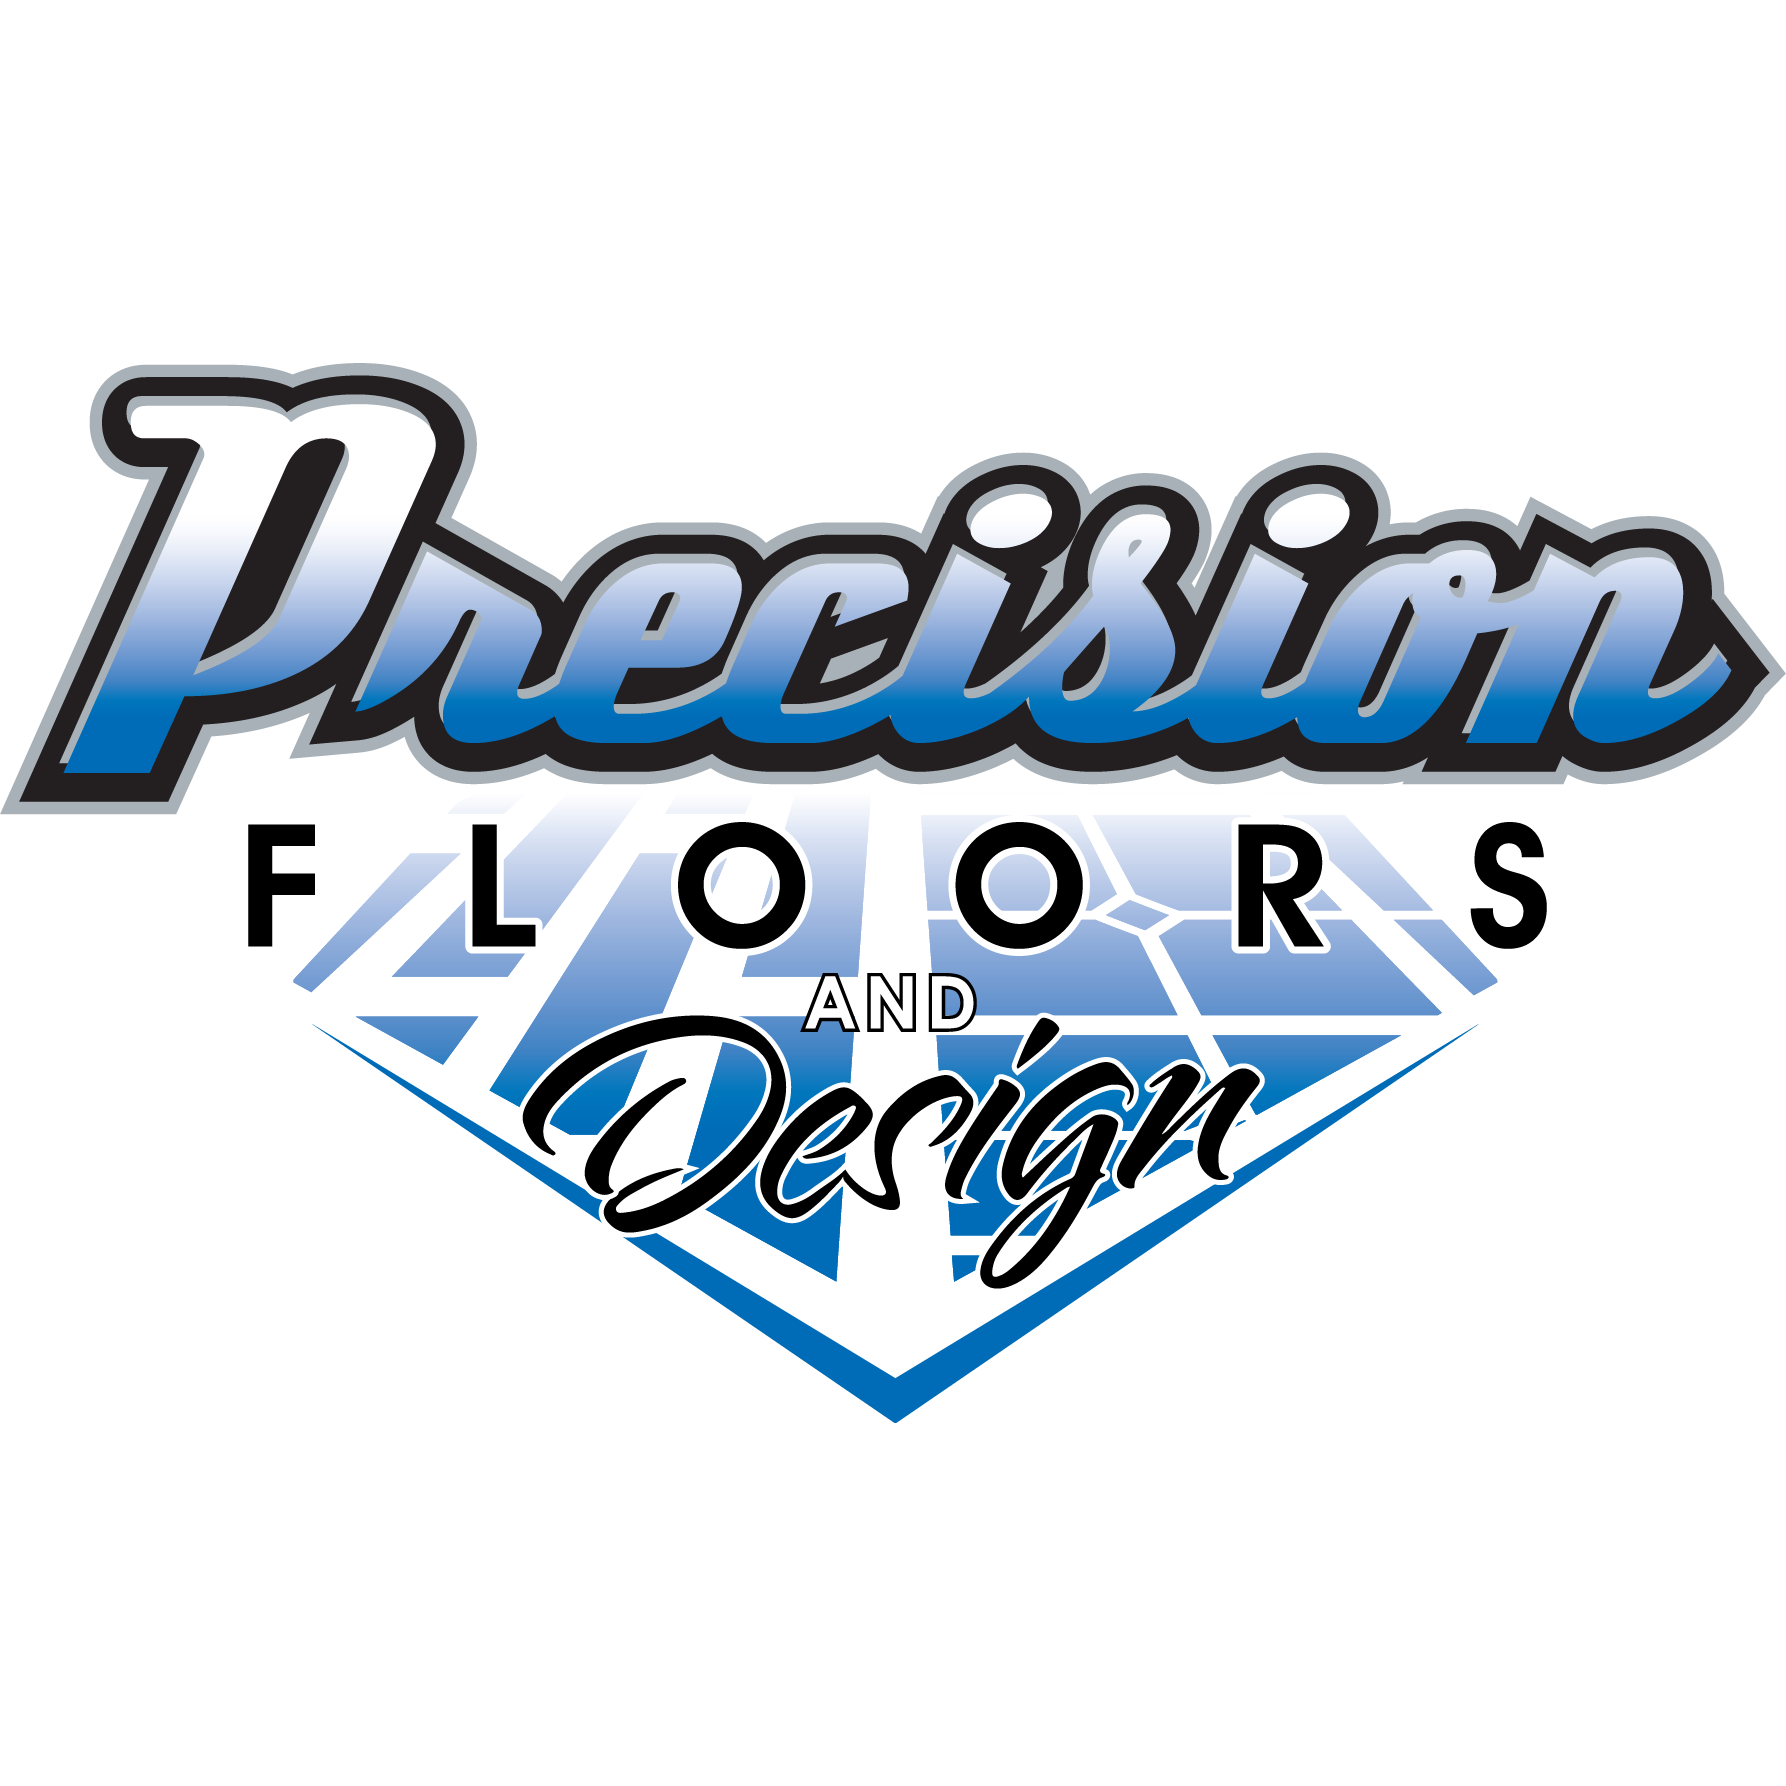 Precision Floors and Design Logo